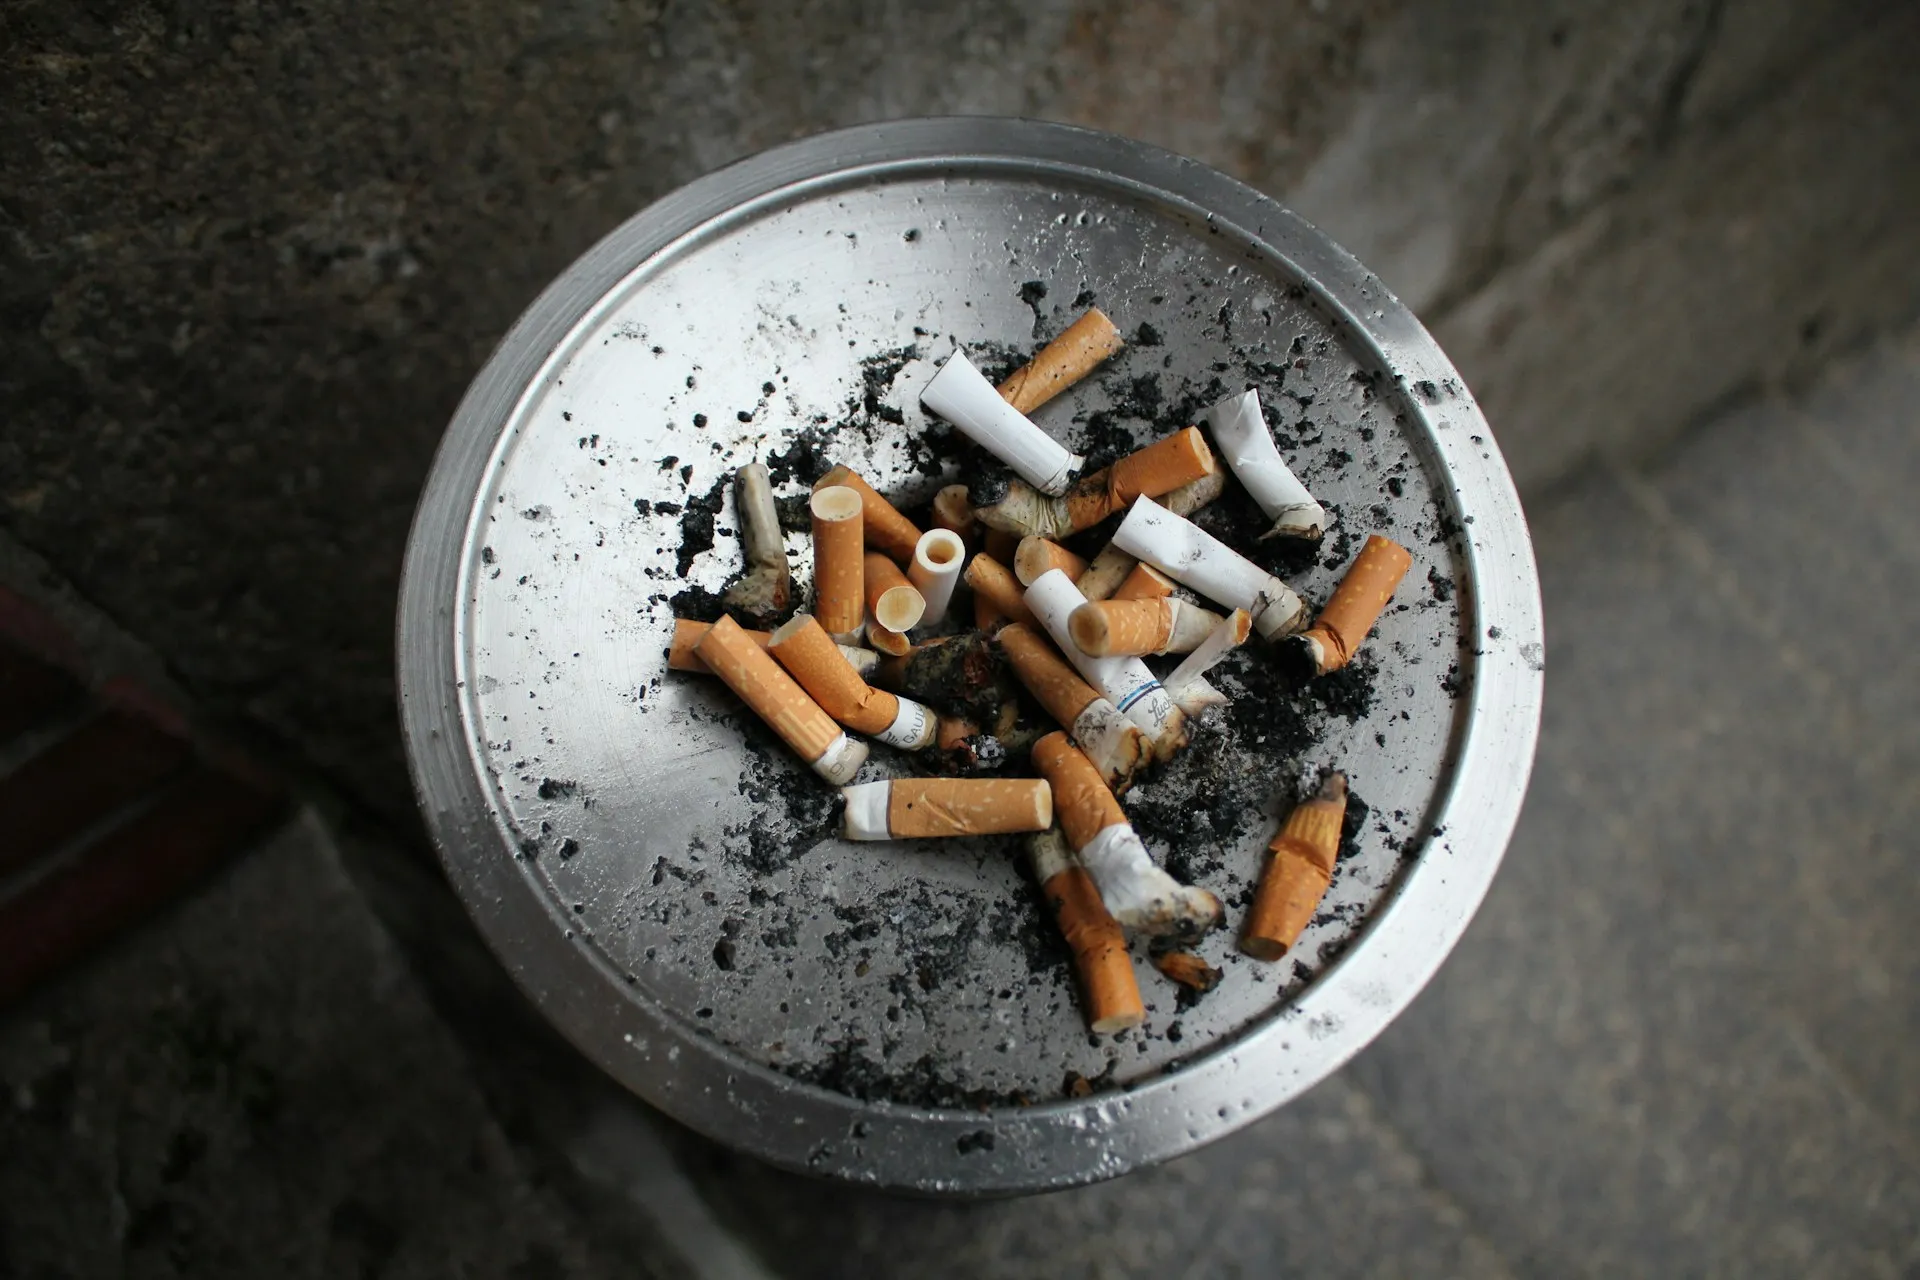 Cigarro causa dependência química